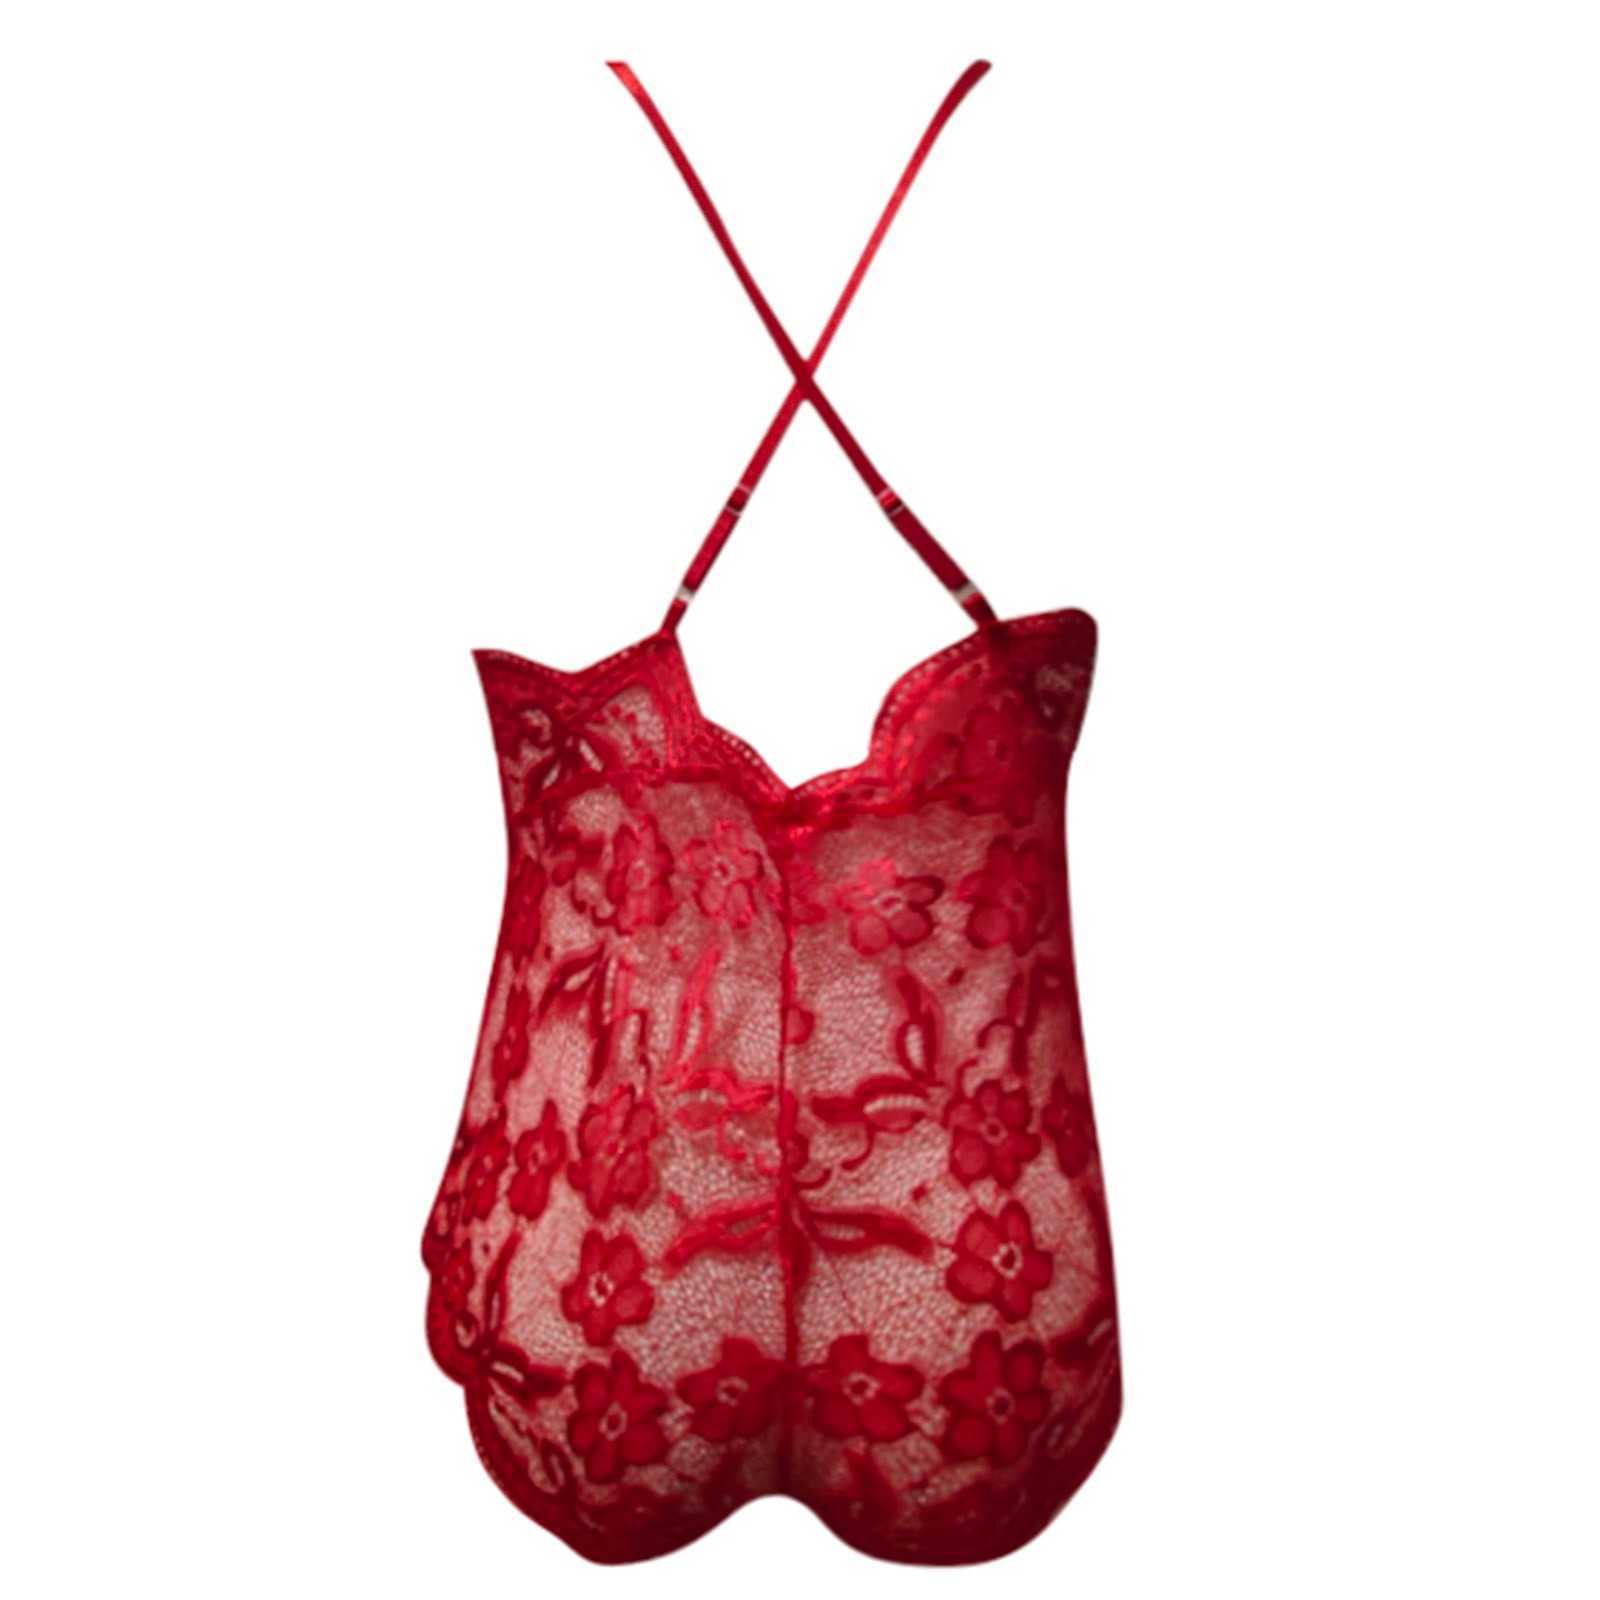 مجموعة مثيرة للنساء الجنس الأزياء ملابس داخلية واحدة قطع واحدة الملابس الملابس الداخلية الأزياء الأزياء الأحمر منقوشة الدانتيل y2302